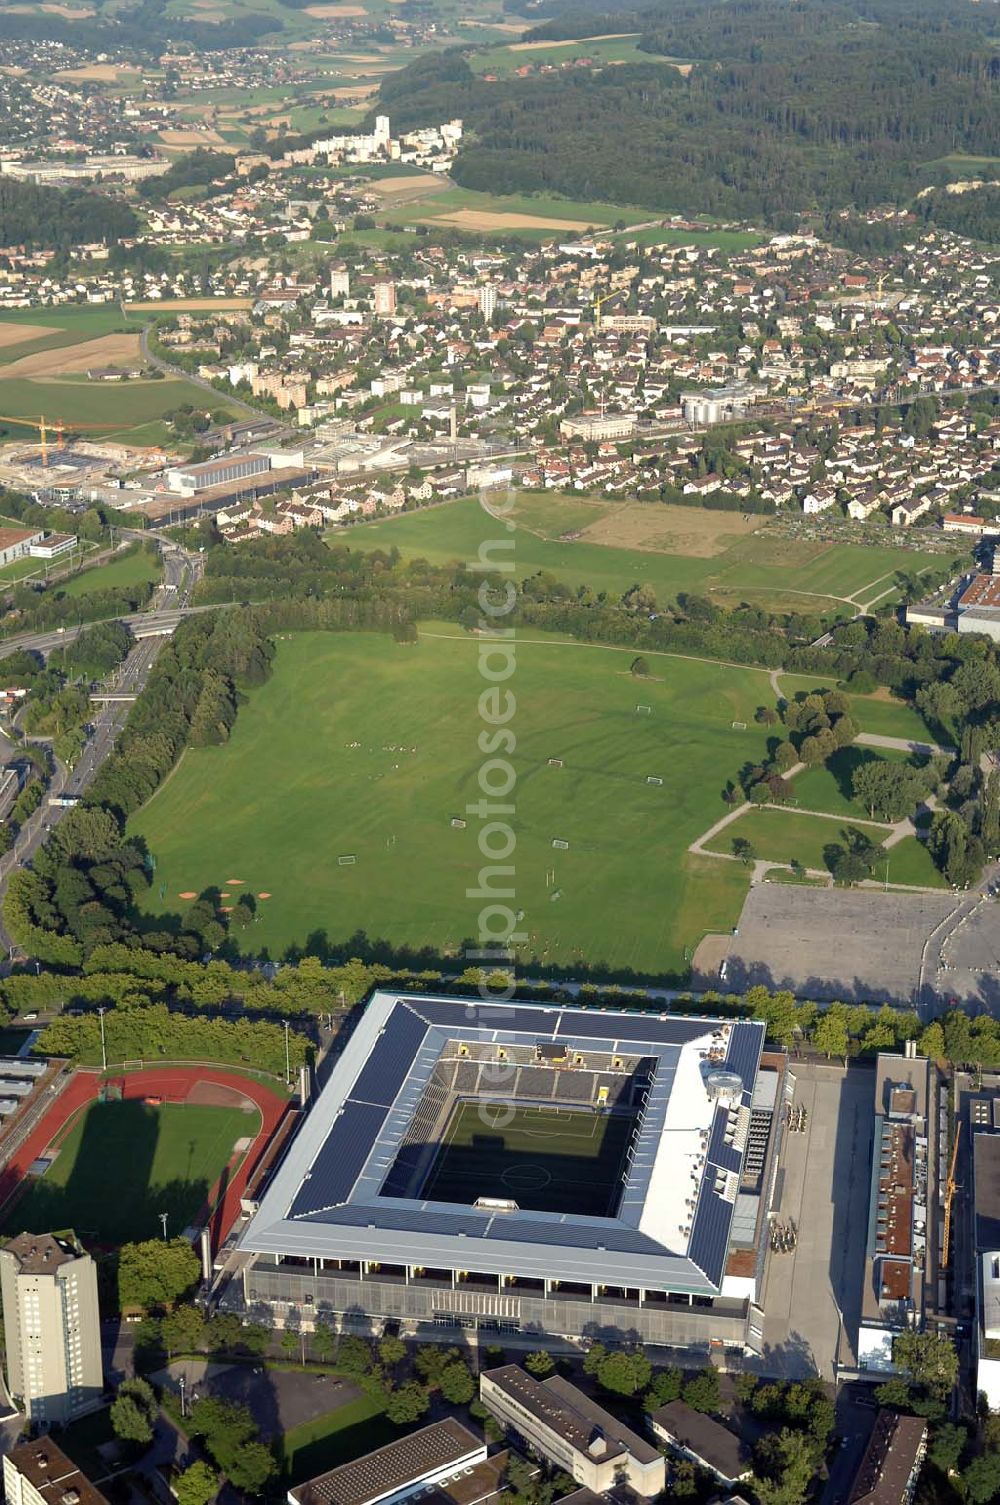 Aerial photograph Bern - Das Stadion Stade de Suisse Wankdorf Bern steht im Wankdorfquartier der Stadt in der Schweiz. Die Arena ist Heimstatt des Berner Fussballvereins BSC Young Boys (YB) und wurde durch die Baufirma Marazzi Generalunternehmung ( heute Losinger Construction AG) und die Baltensperger AG errichtet.